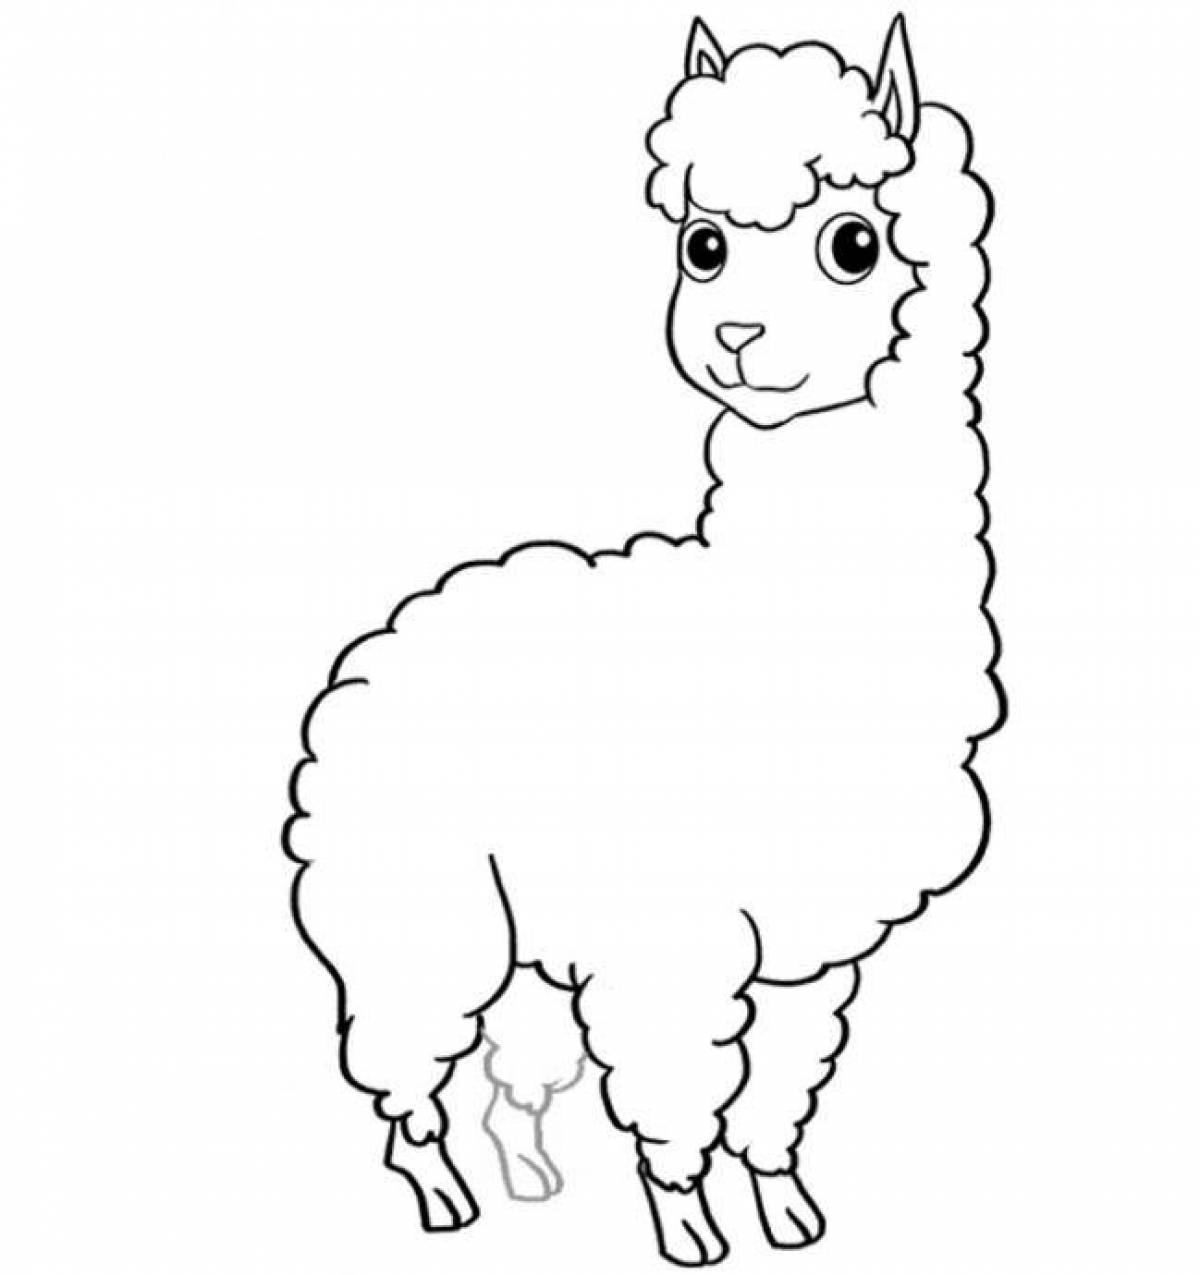 Coloring page of a sociable alpaca